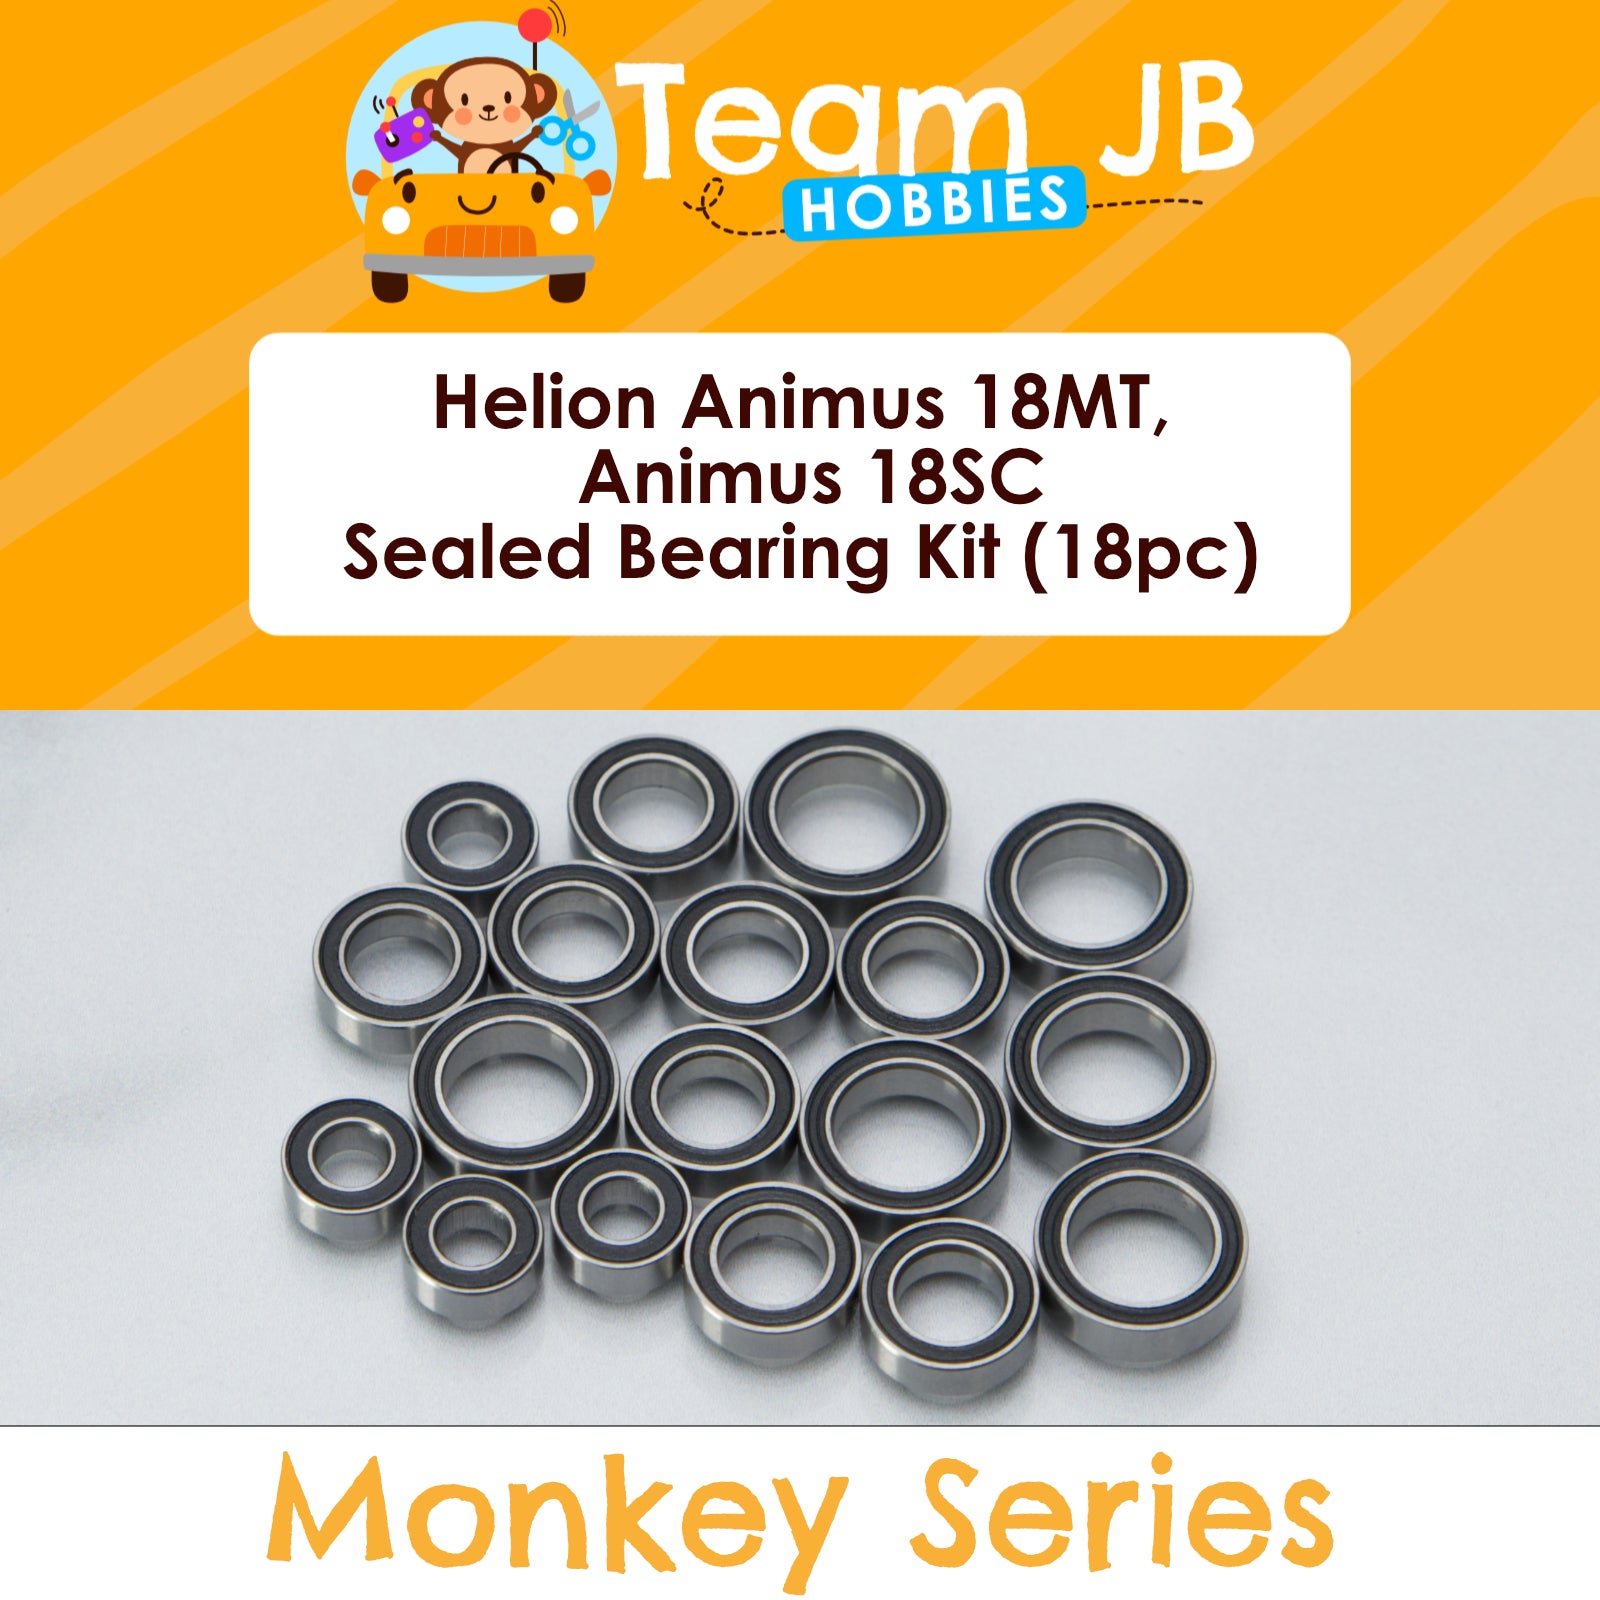 Helion Animus 18MT, Animus 18SC - Sealed Bearing Kit